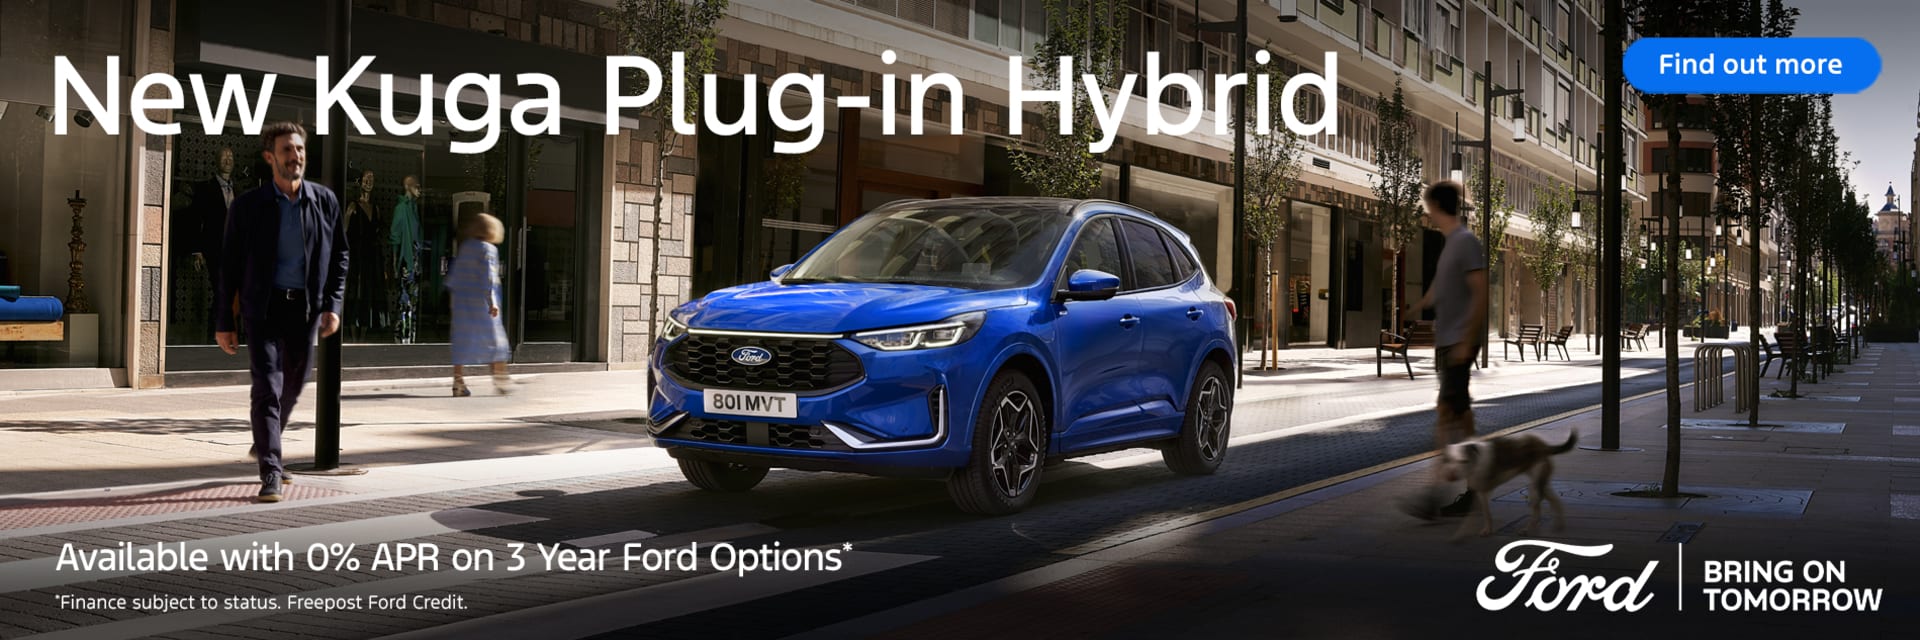 New Kuga Plug-in Hybrid 0% APR 3yr Ford Options